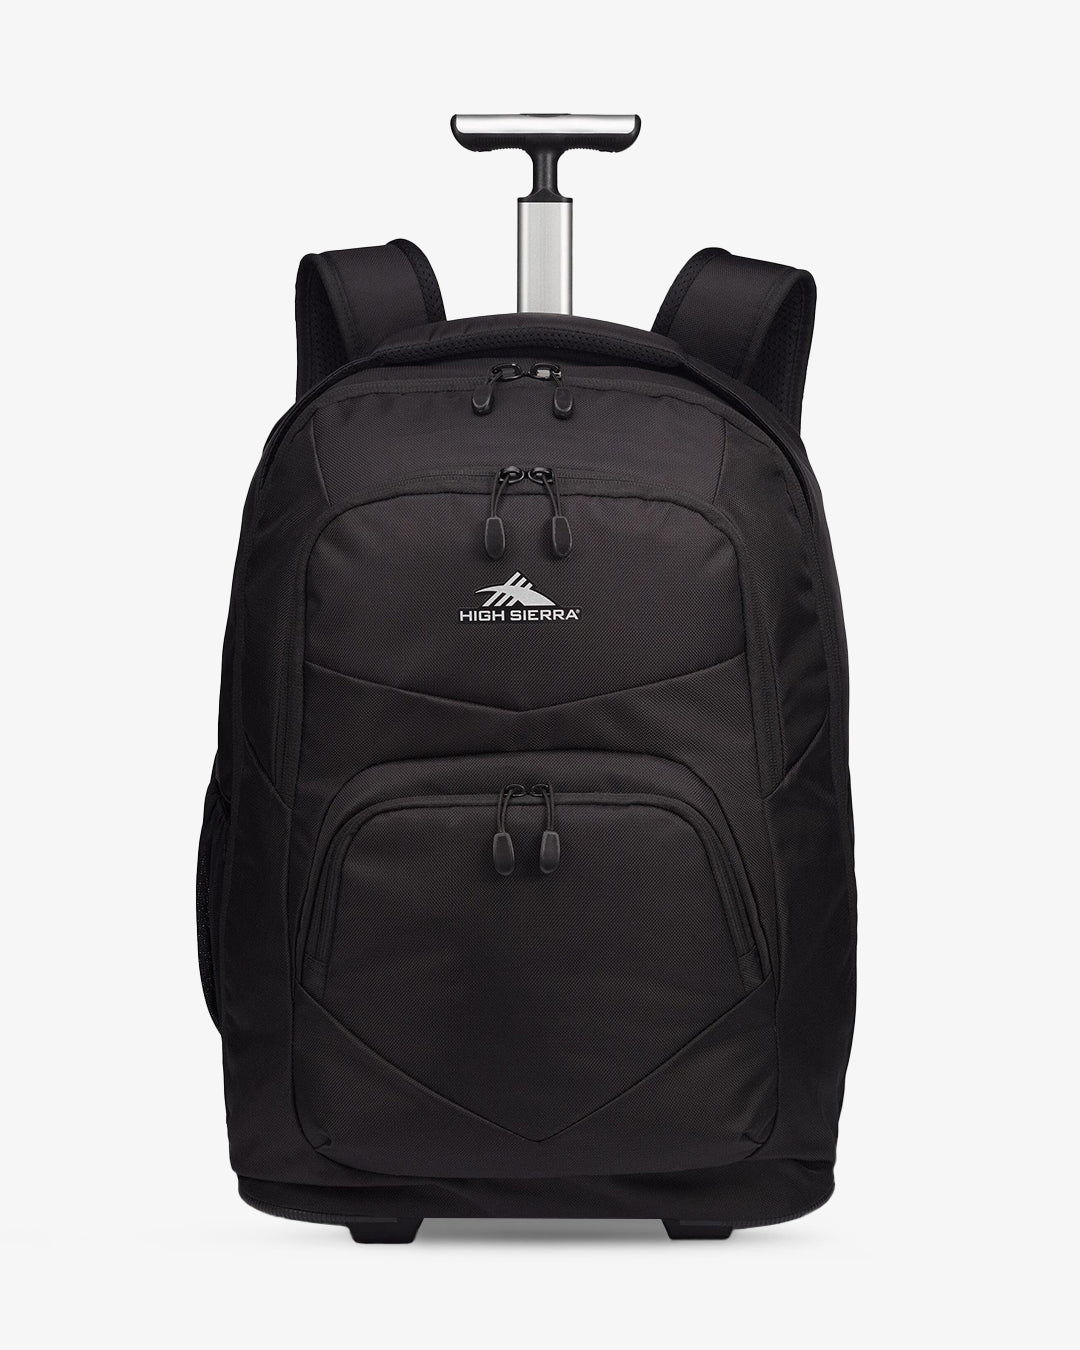 High sierra Freewheel Pro Wheeled Backpack